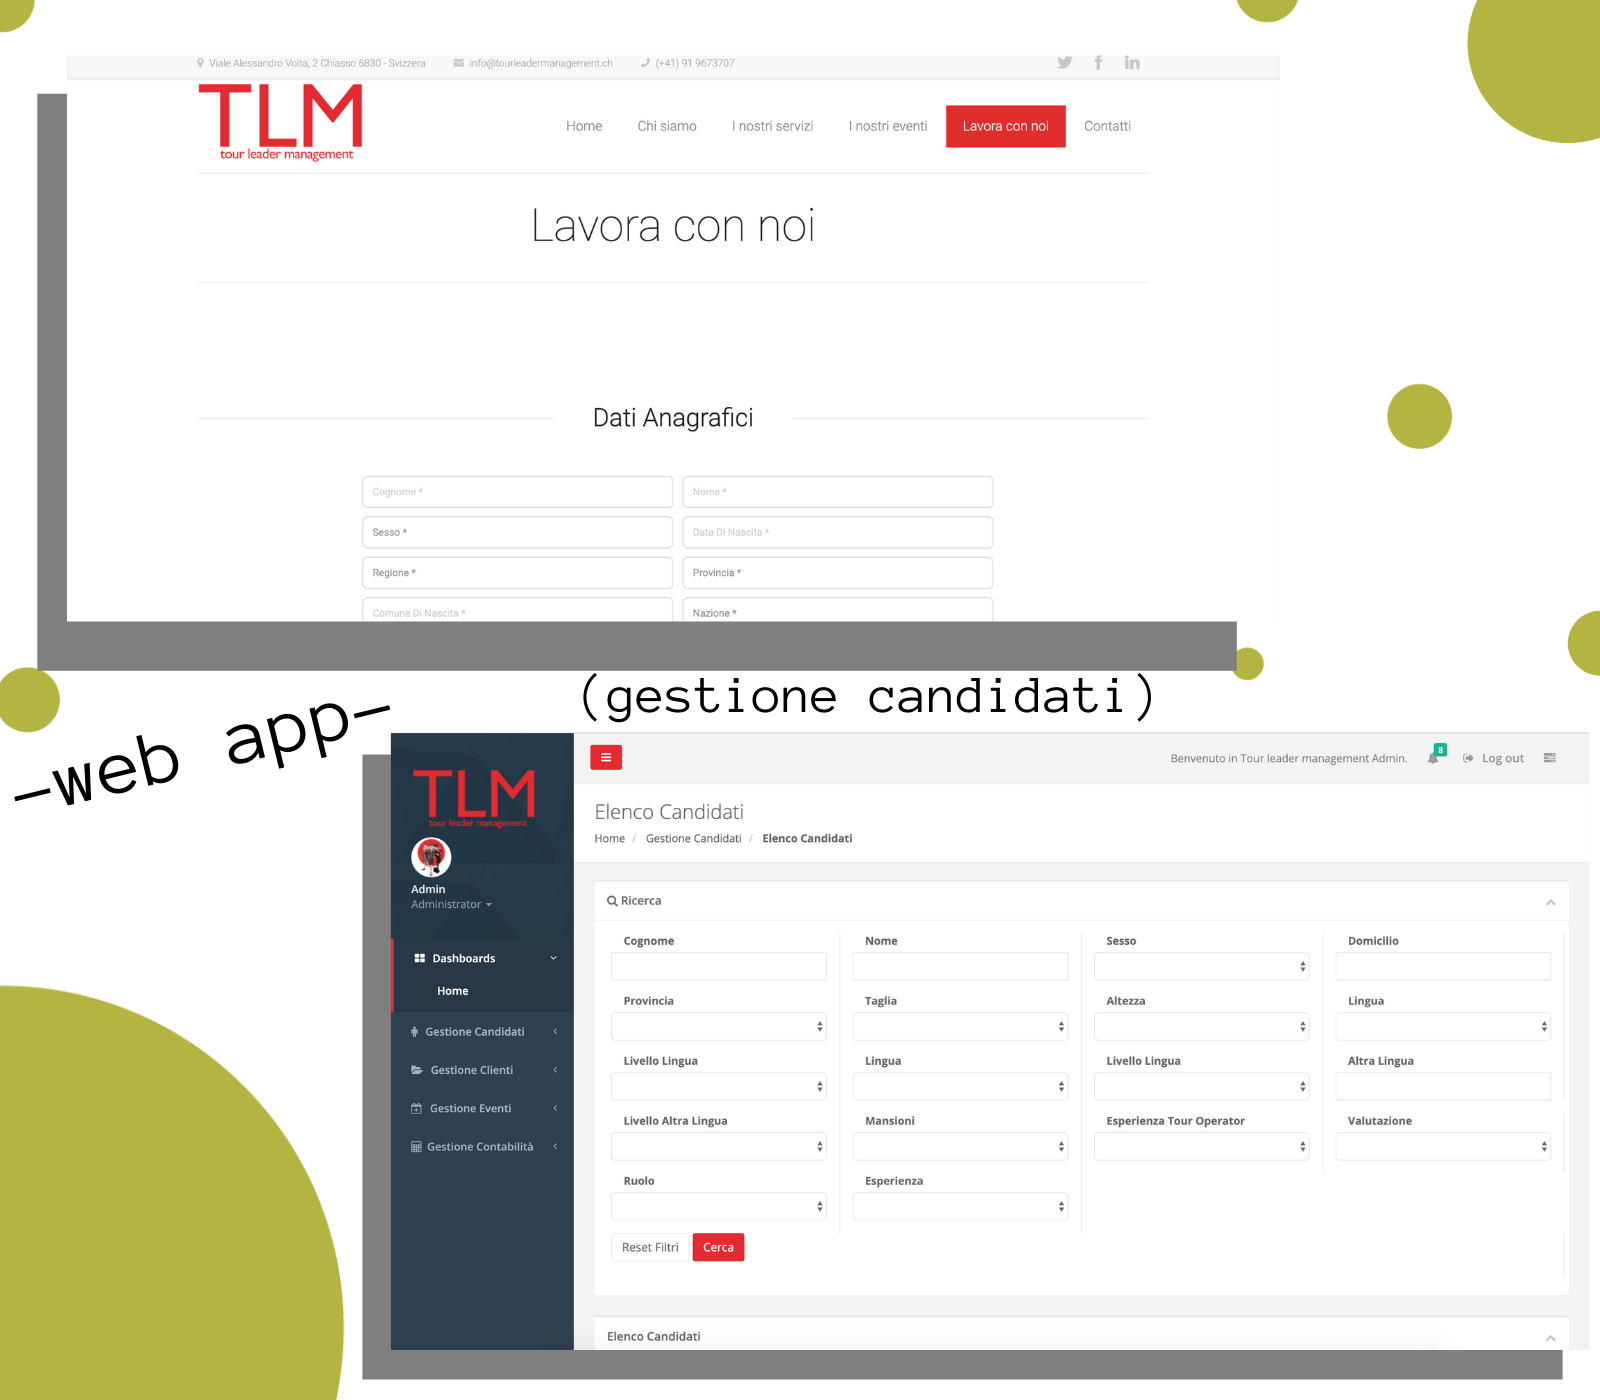 TLM web app